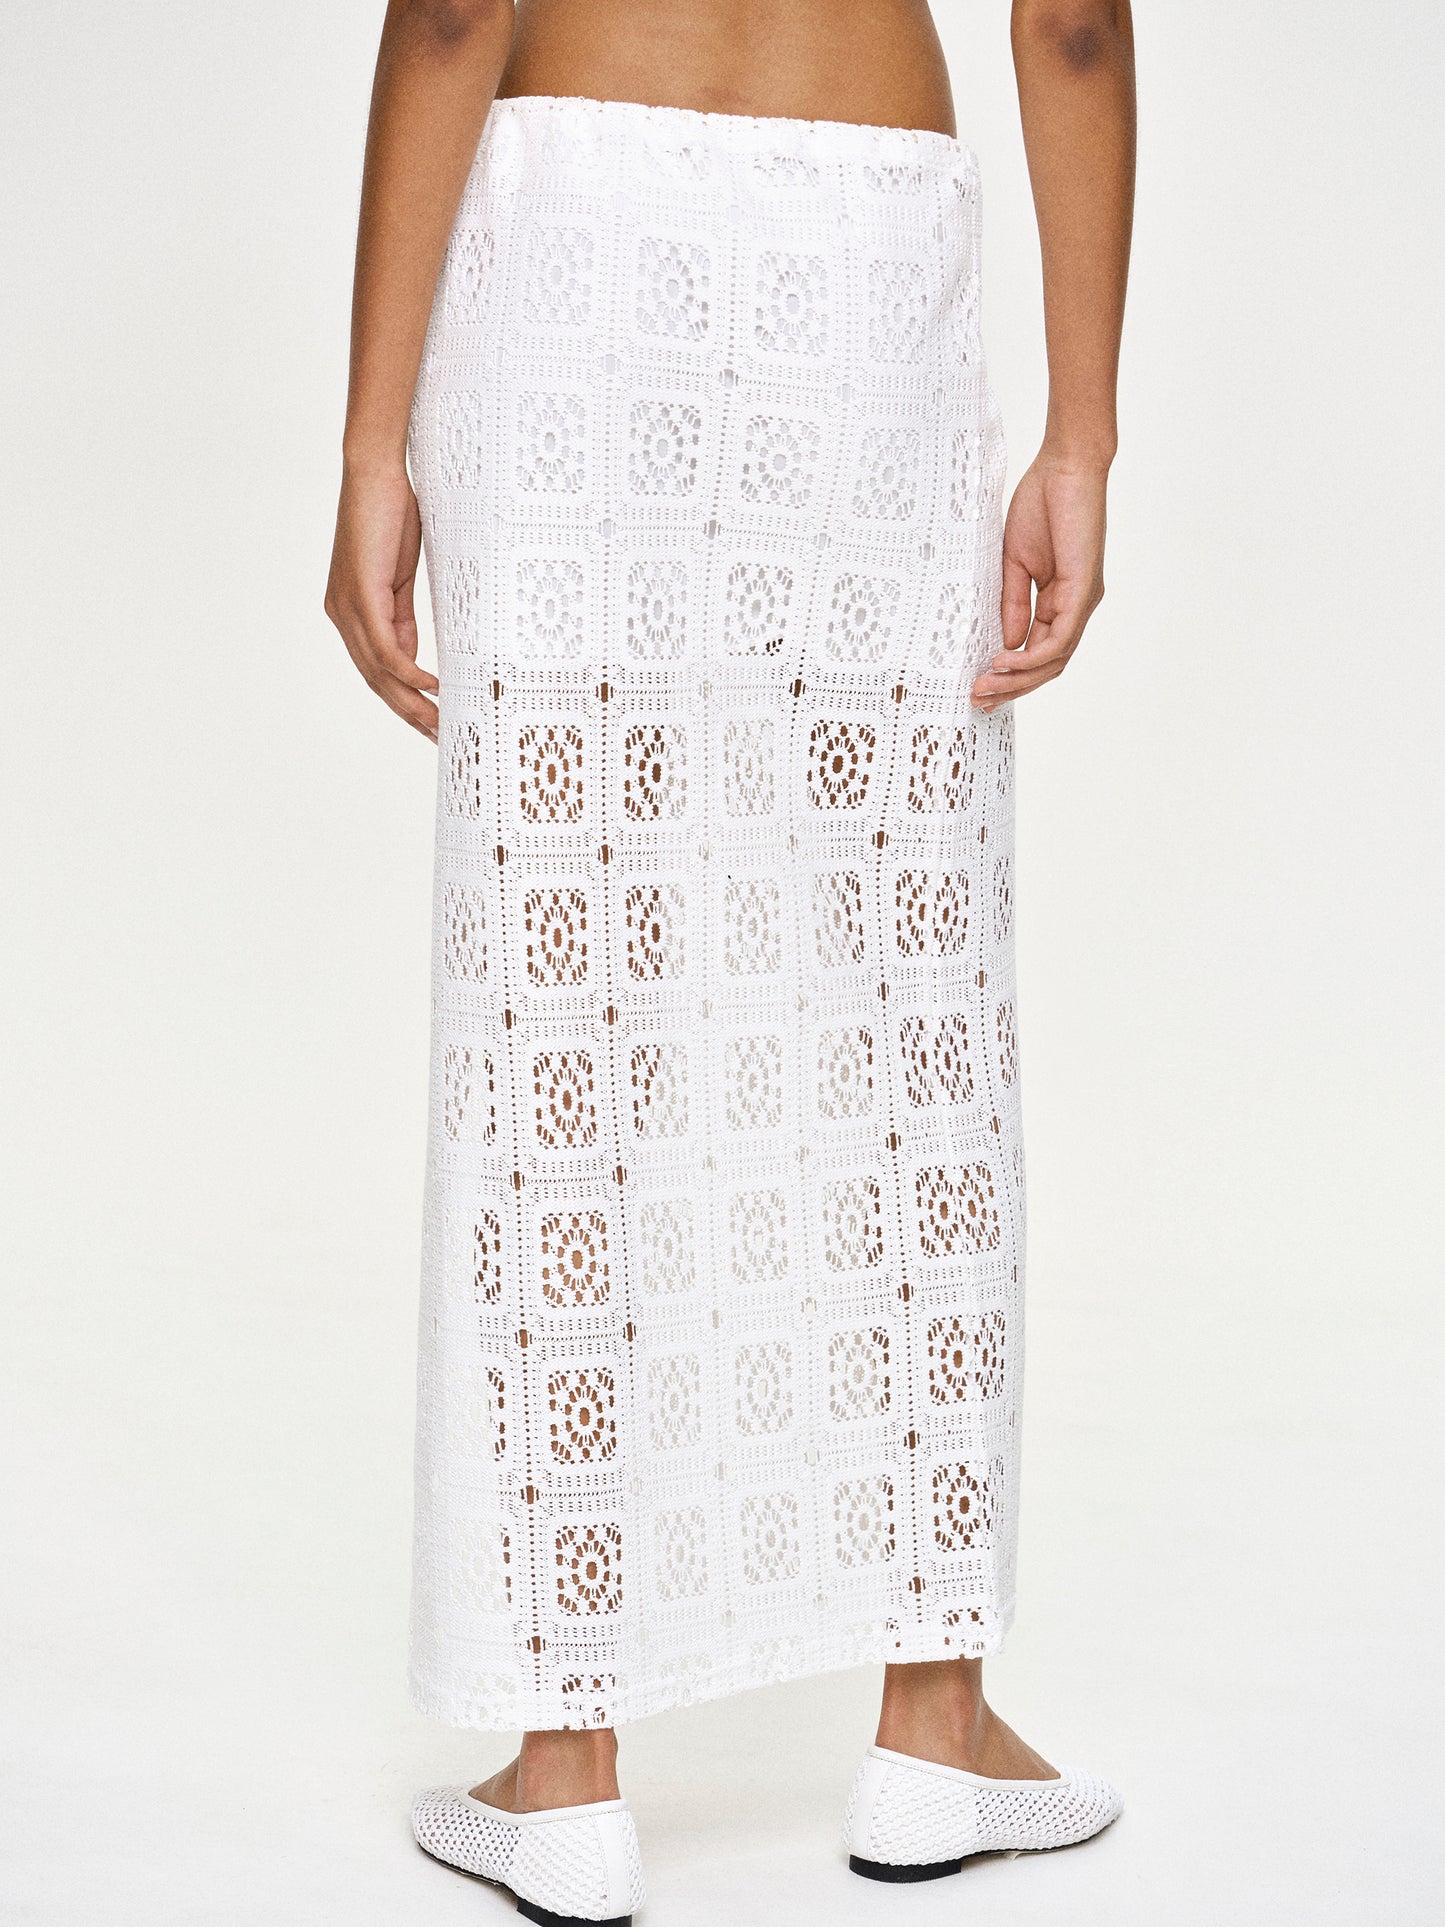 Crochet Drawstring Skirt, White